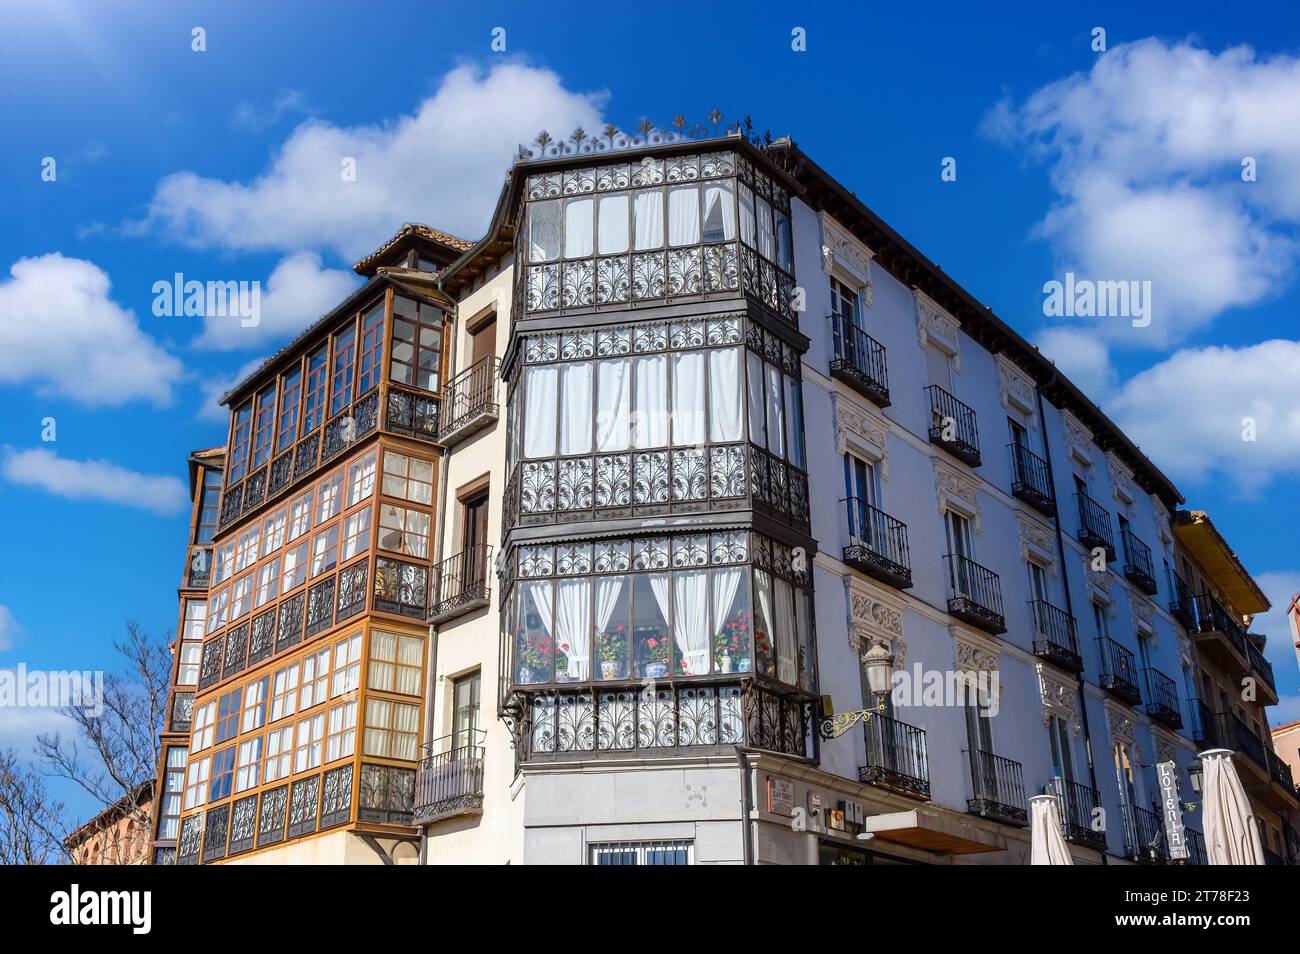 Architektur in Segovia, Spanien Stockfoto